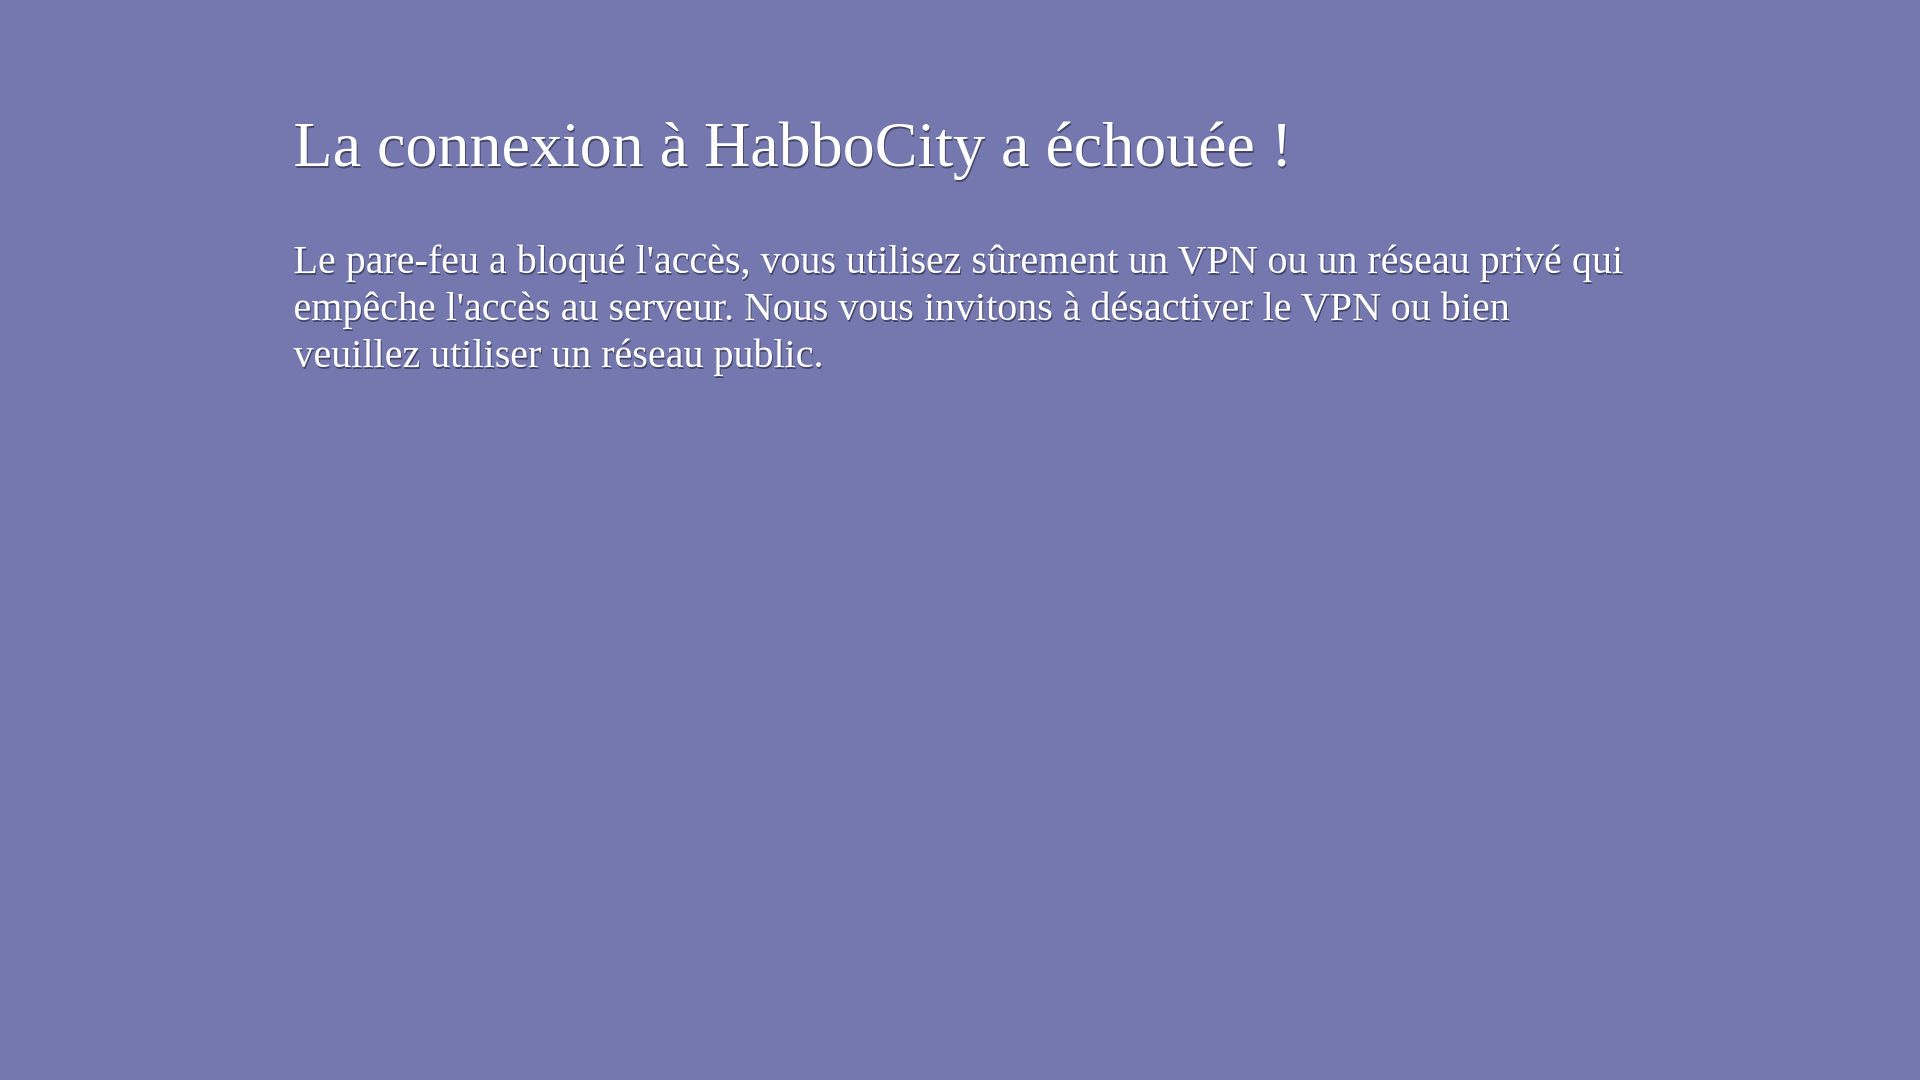 Status do site habbocity.me está   ONLINE